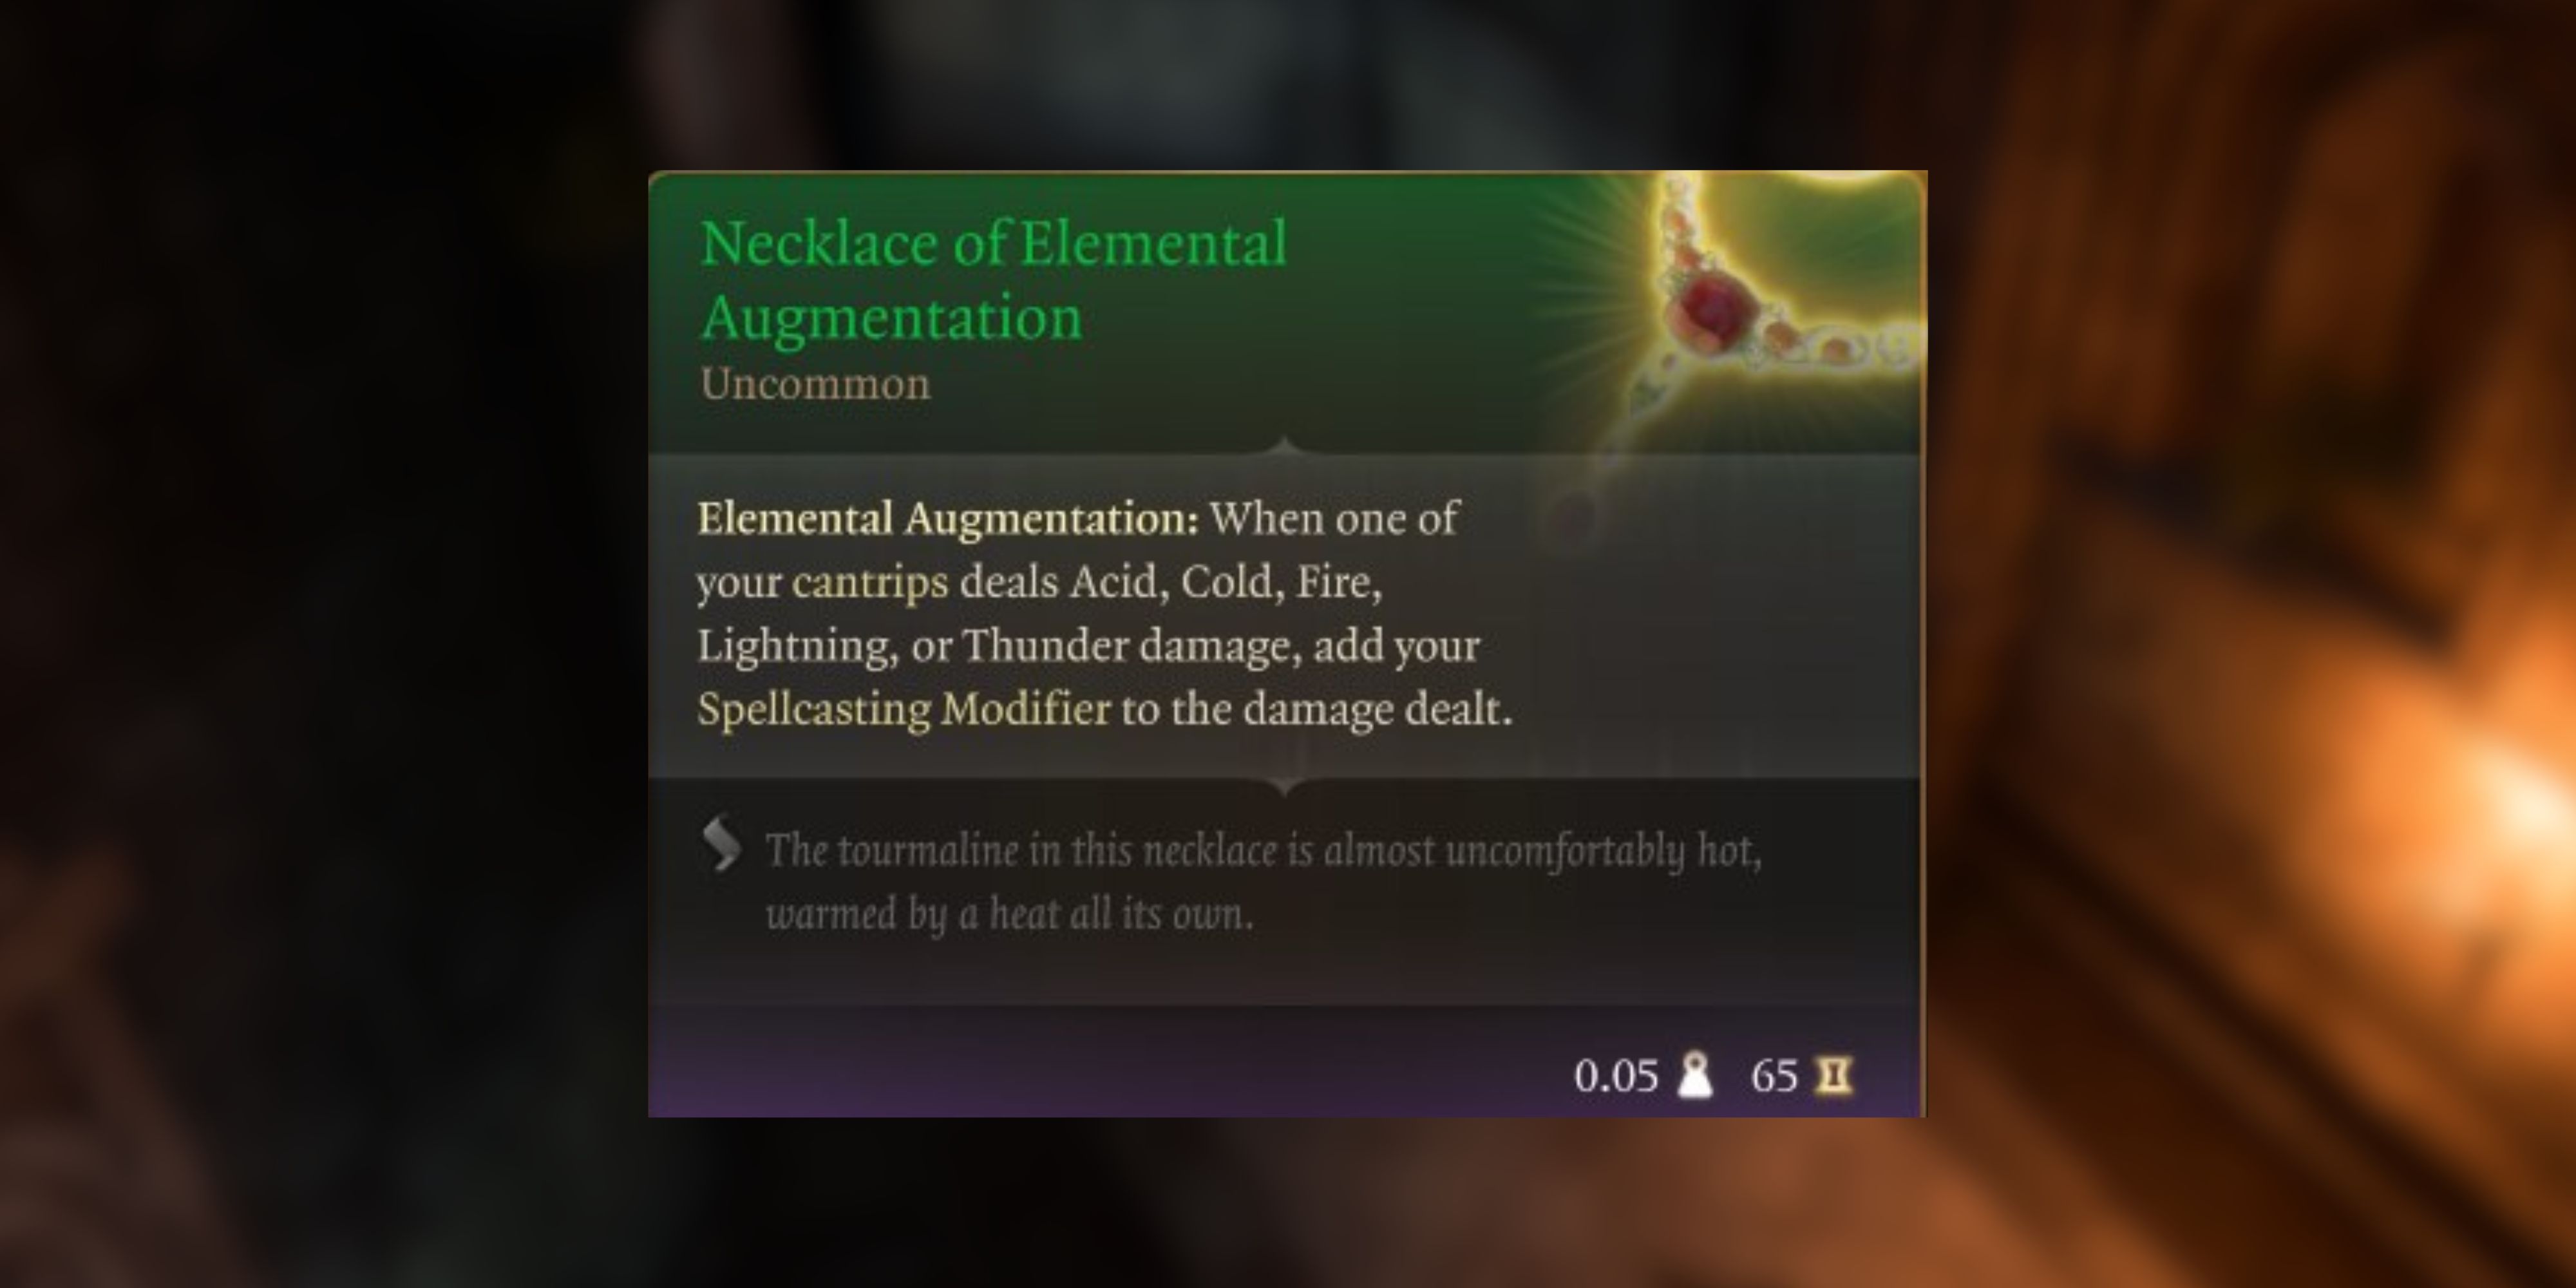 necklace of elemental augmentation in baldur's gate 3